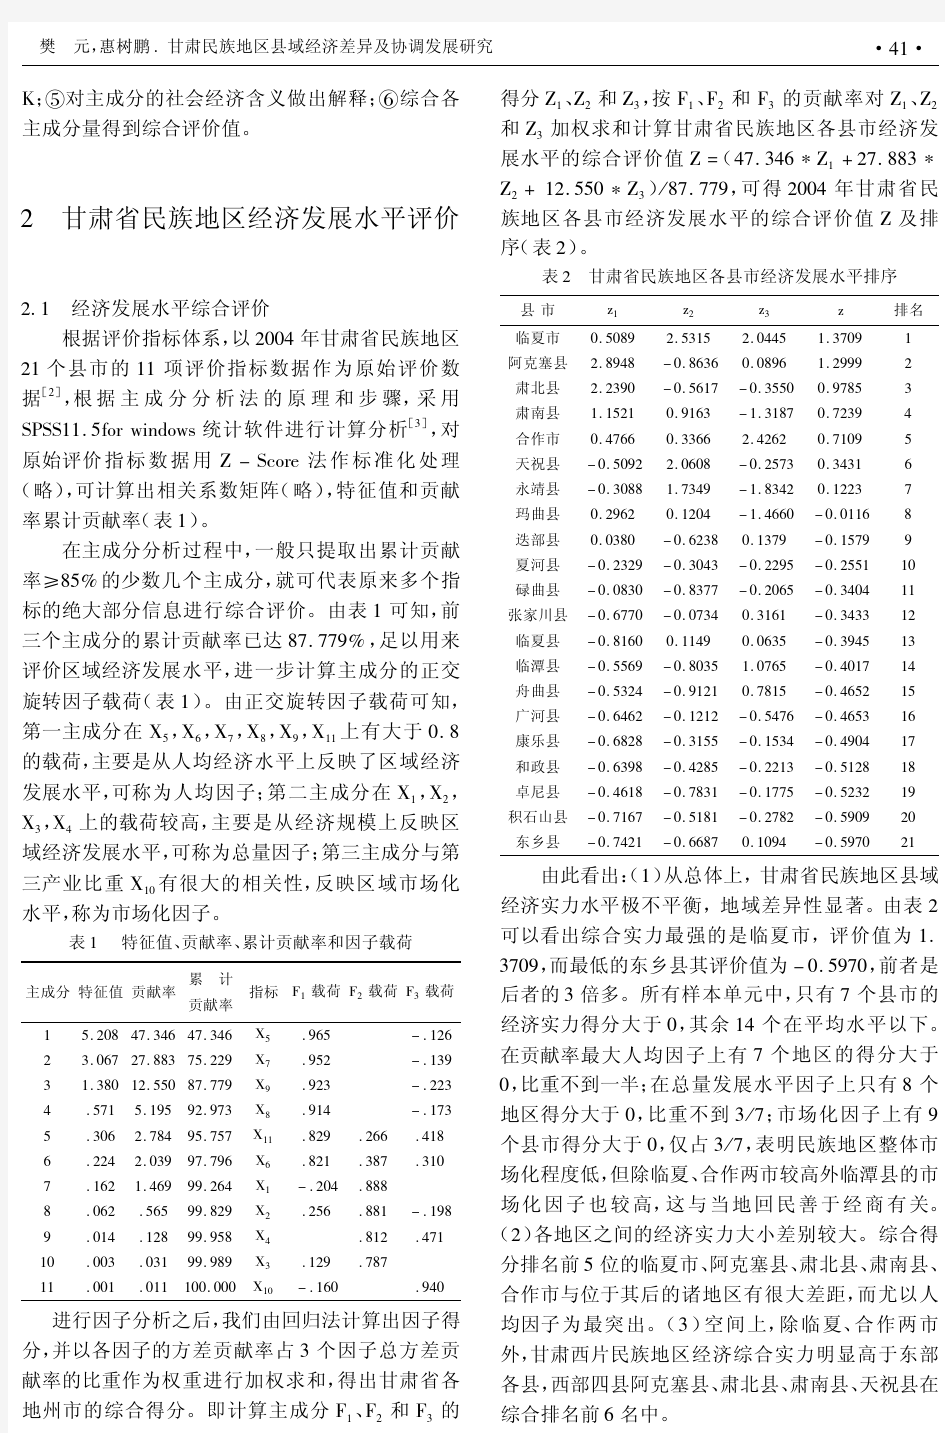 甘肃民族地区县域经济差异及协调发展研究